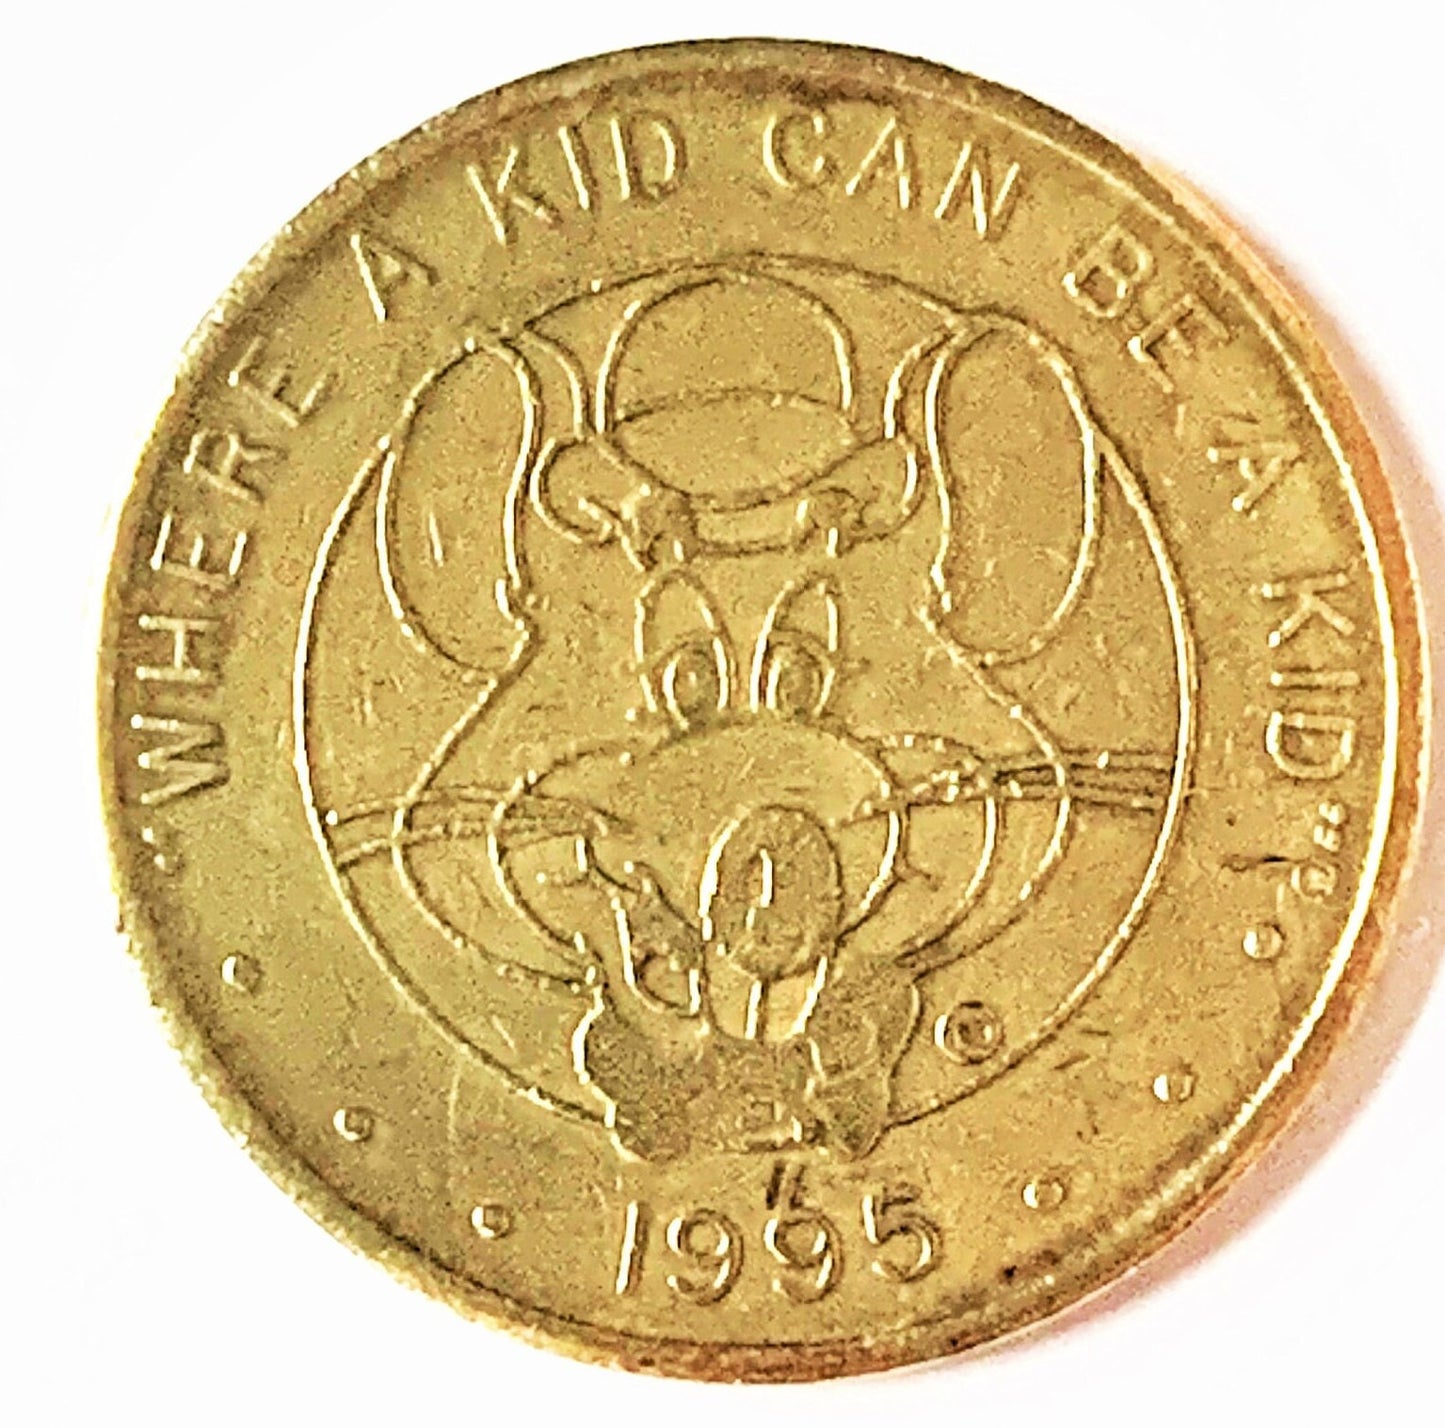 Chuck E. Cheese Tokens - 1980 to 2OO8 - Retro Coin - ChuckECheese Token - Vintage Arcade Token - Where a Kid can be a Kid